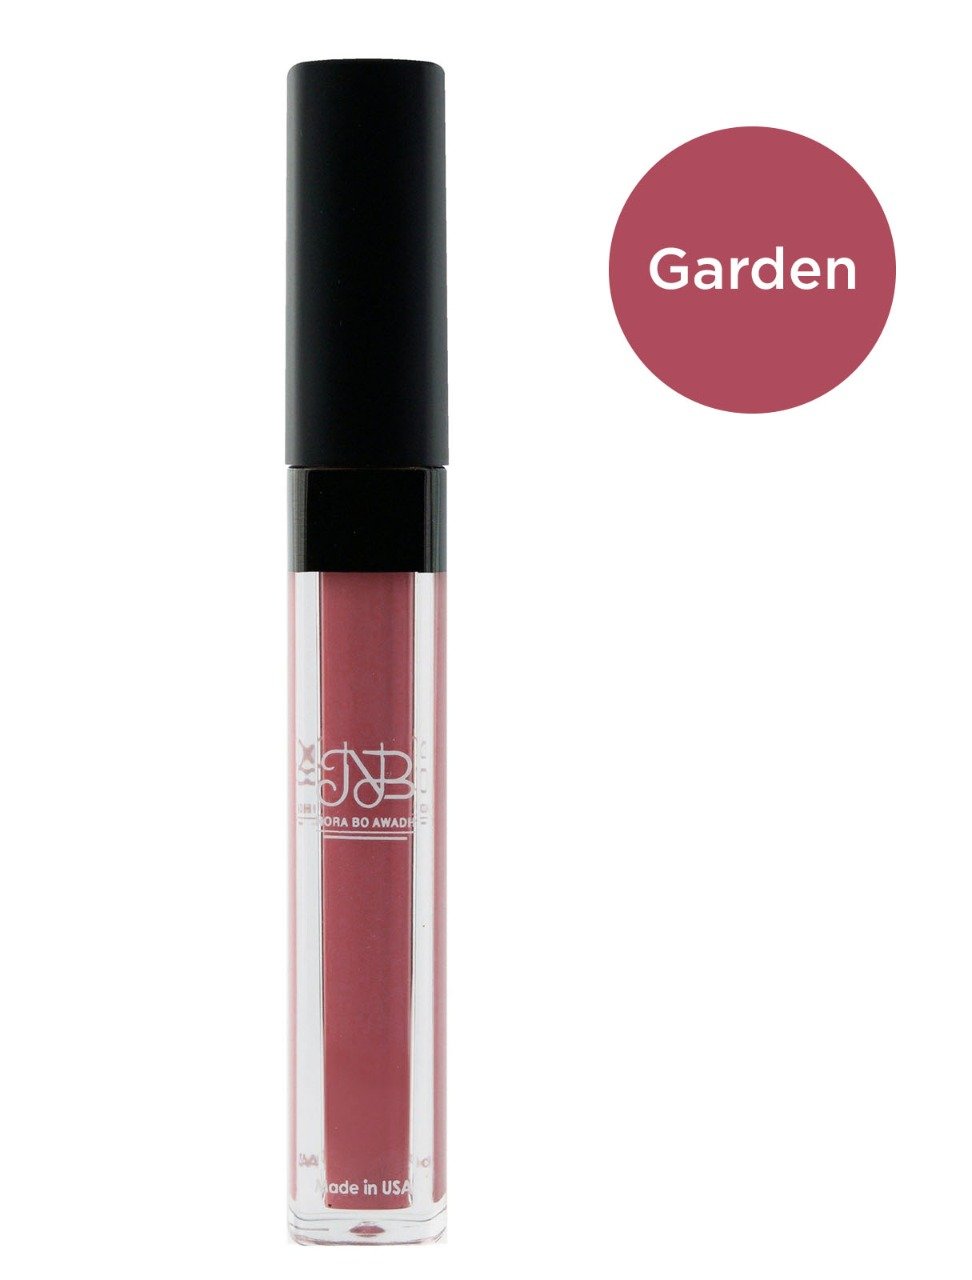 Nora Bo Awadh Garden Liquid Lipstick